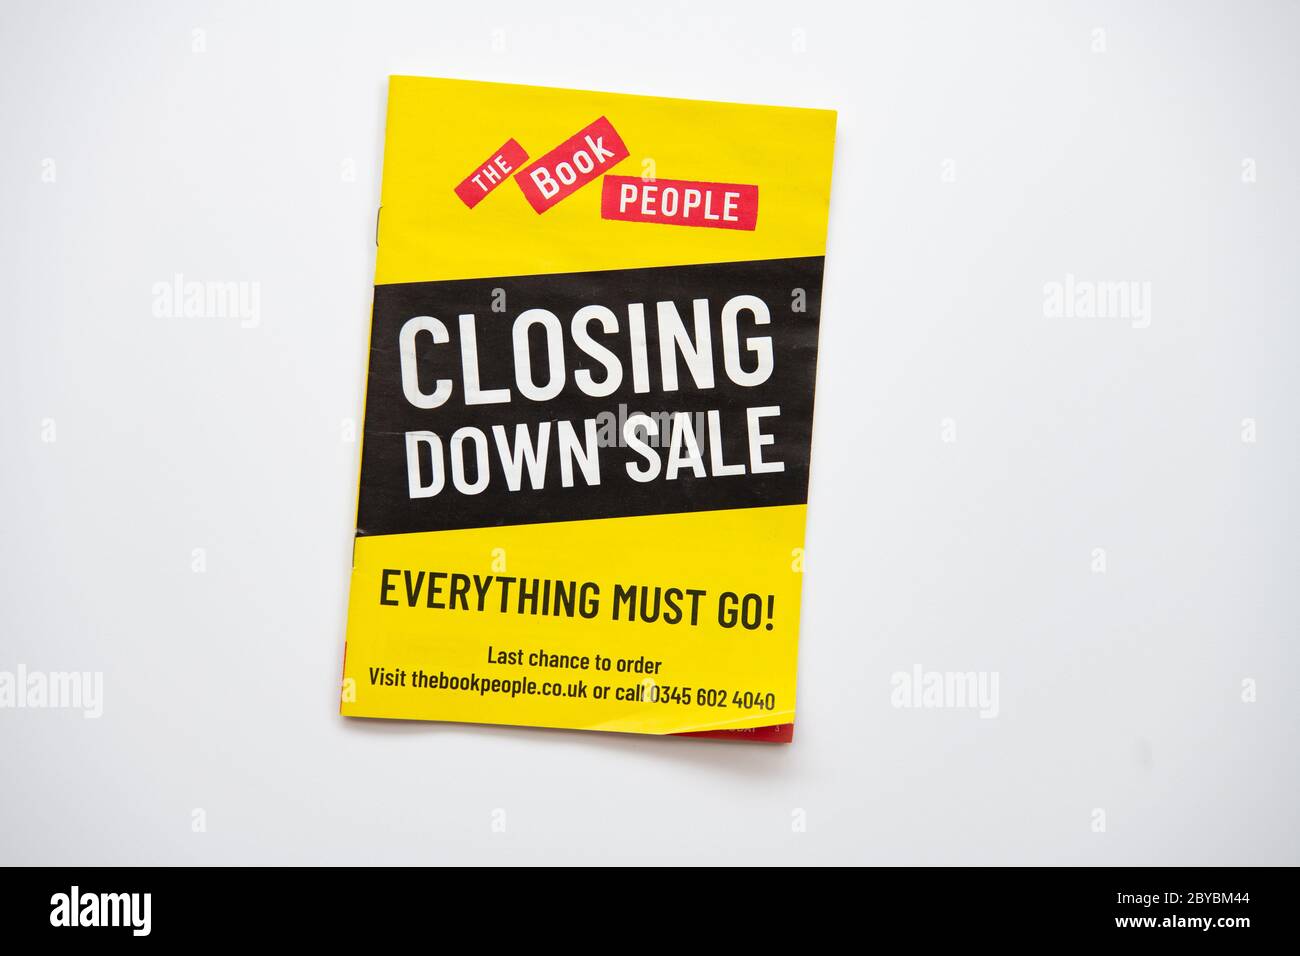 Le catalogue Book People Closing Down sale 2020 - Royaume-Uni Banque D'Images